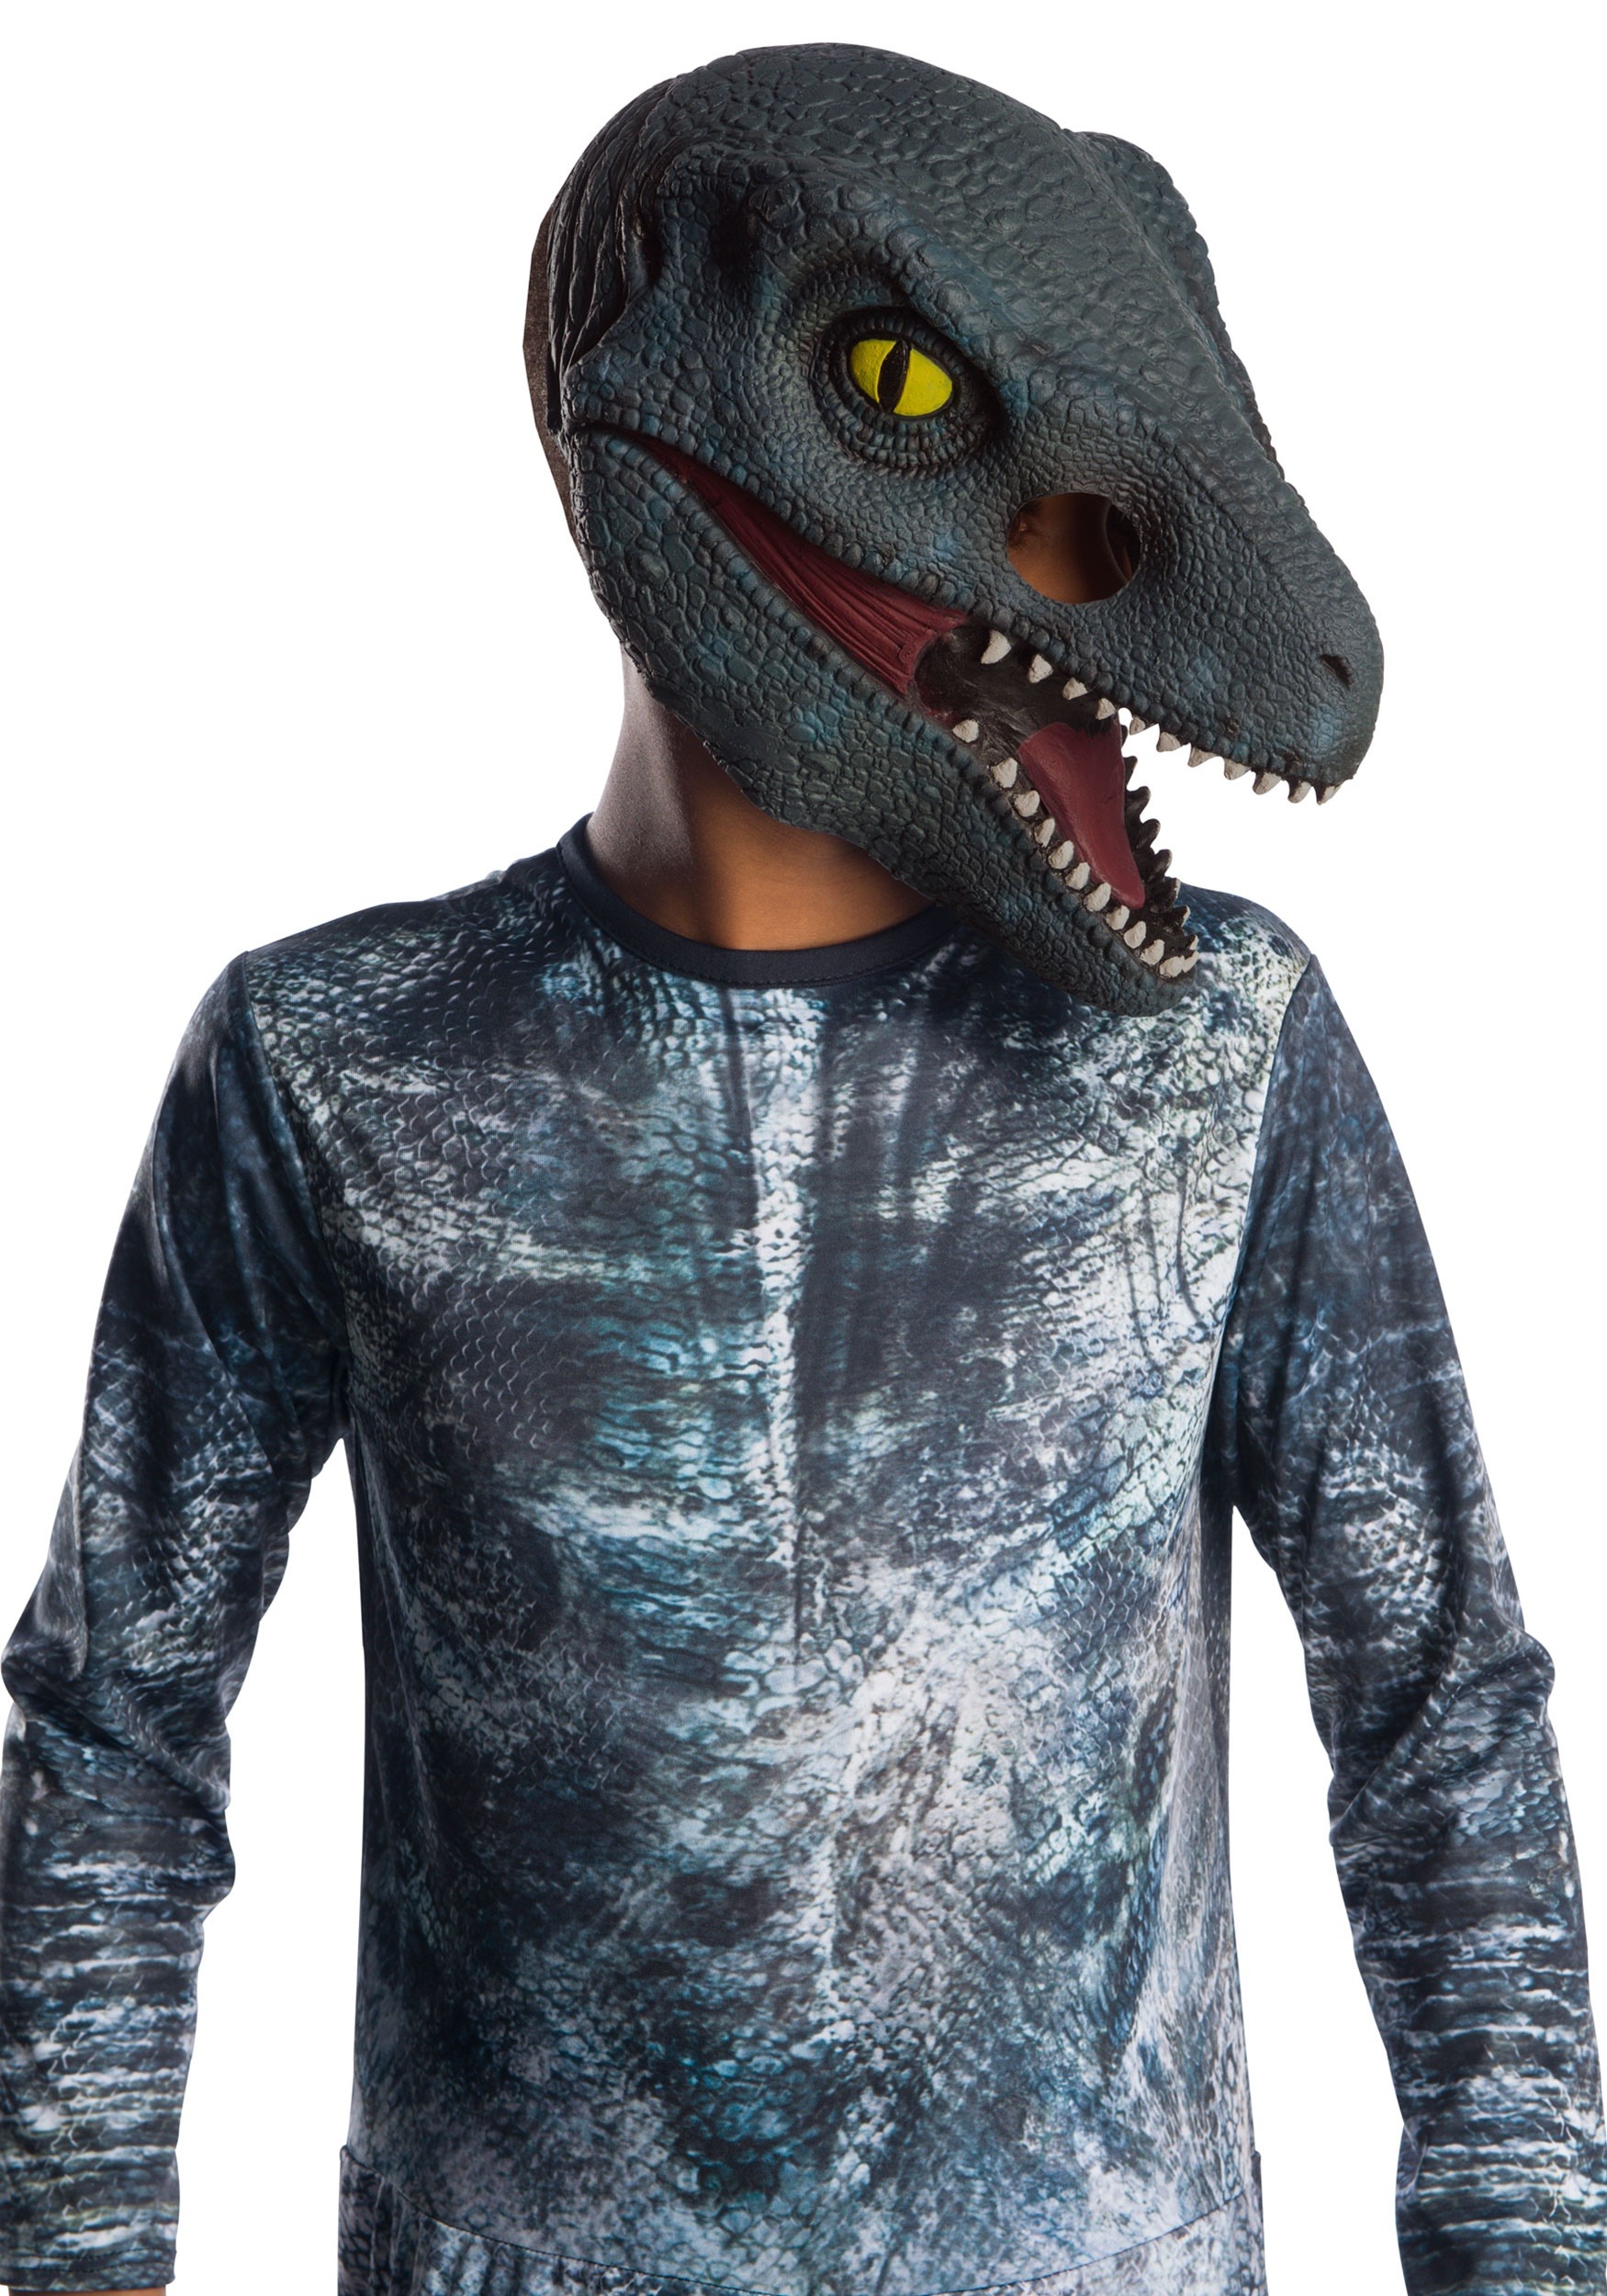 Jurassic World 2 Blue Velociraptor 3 4 Mask For Kids